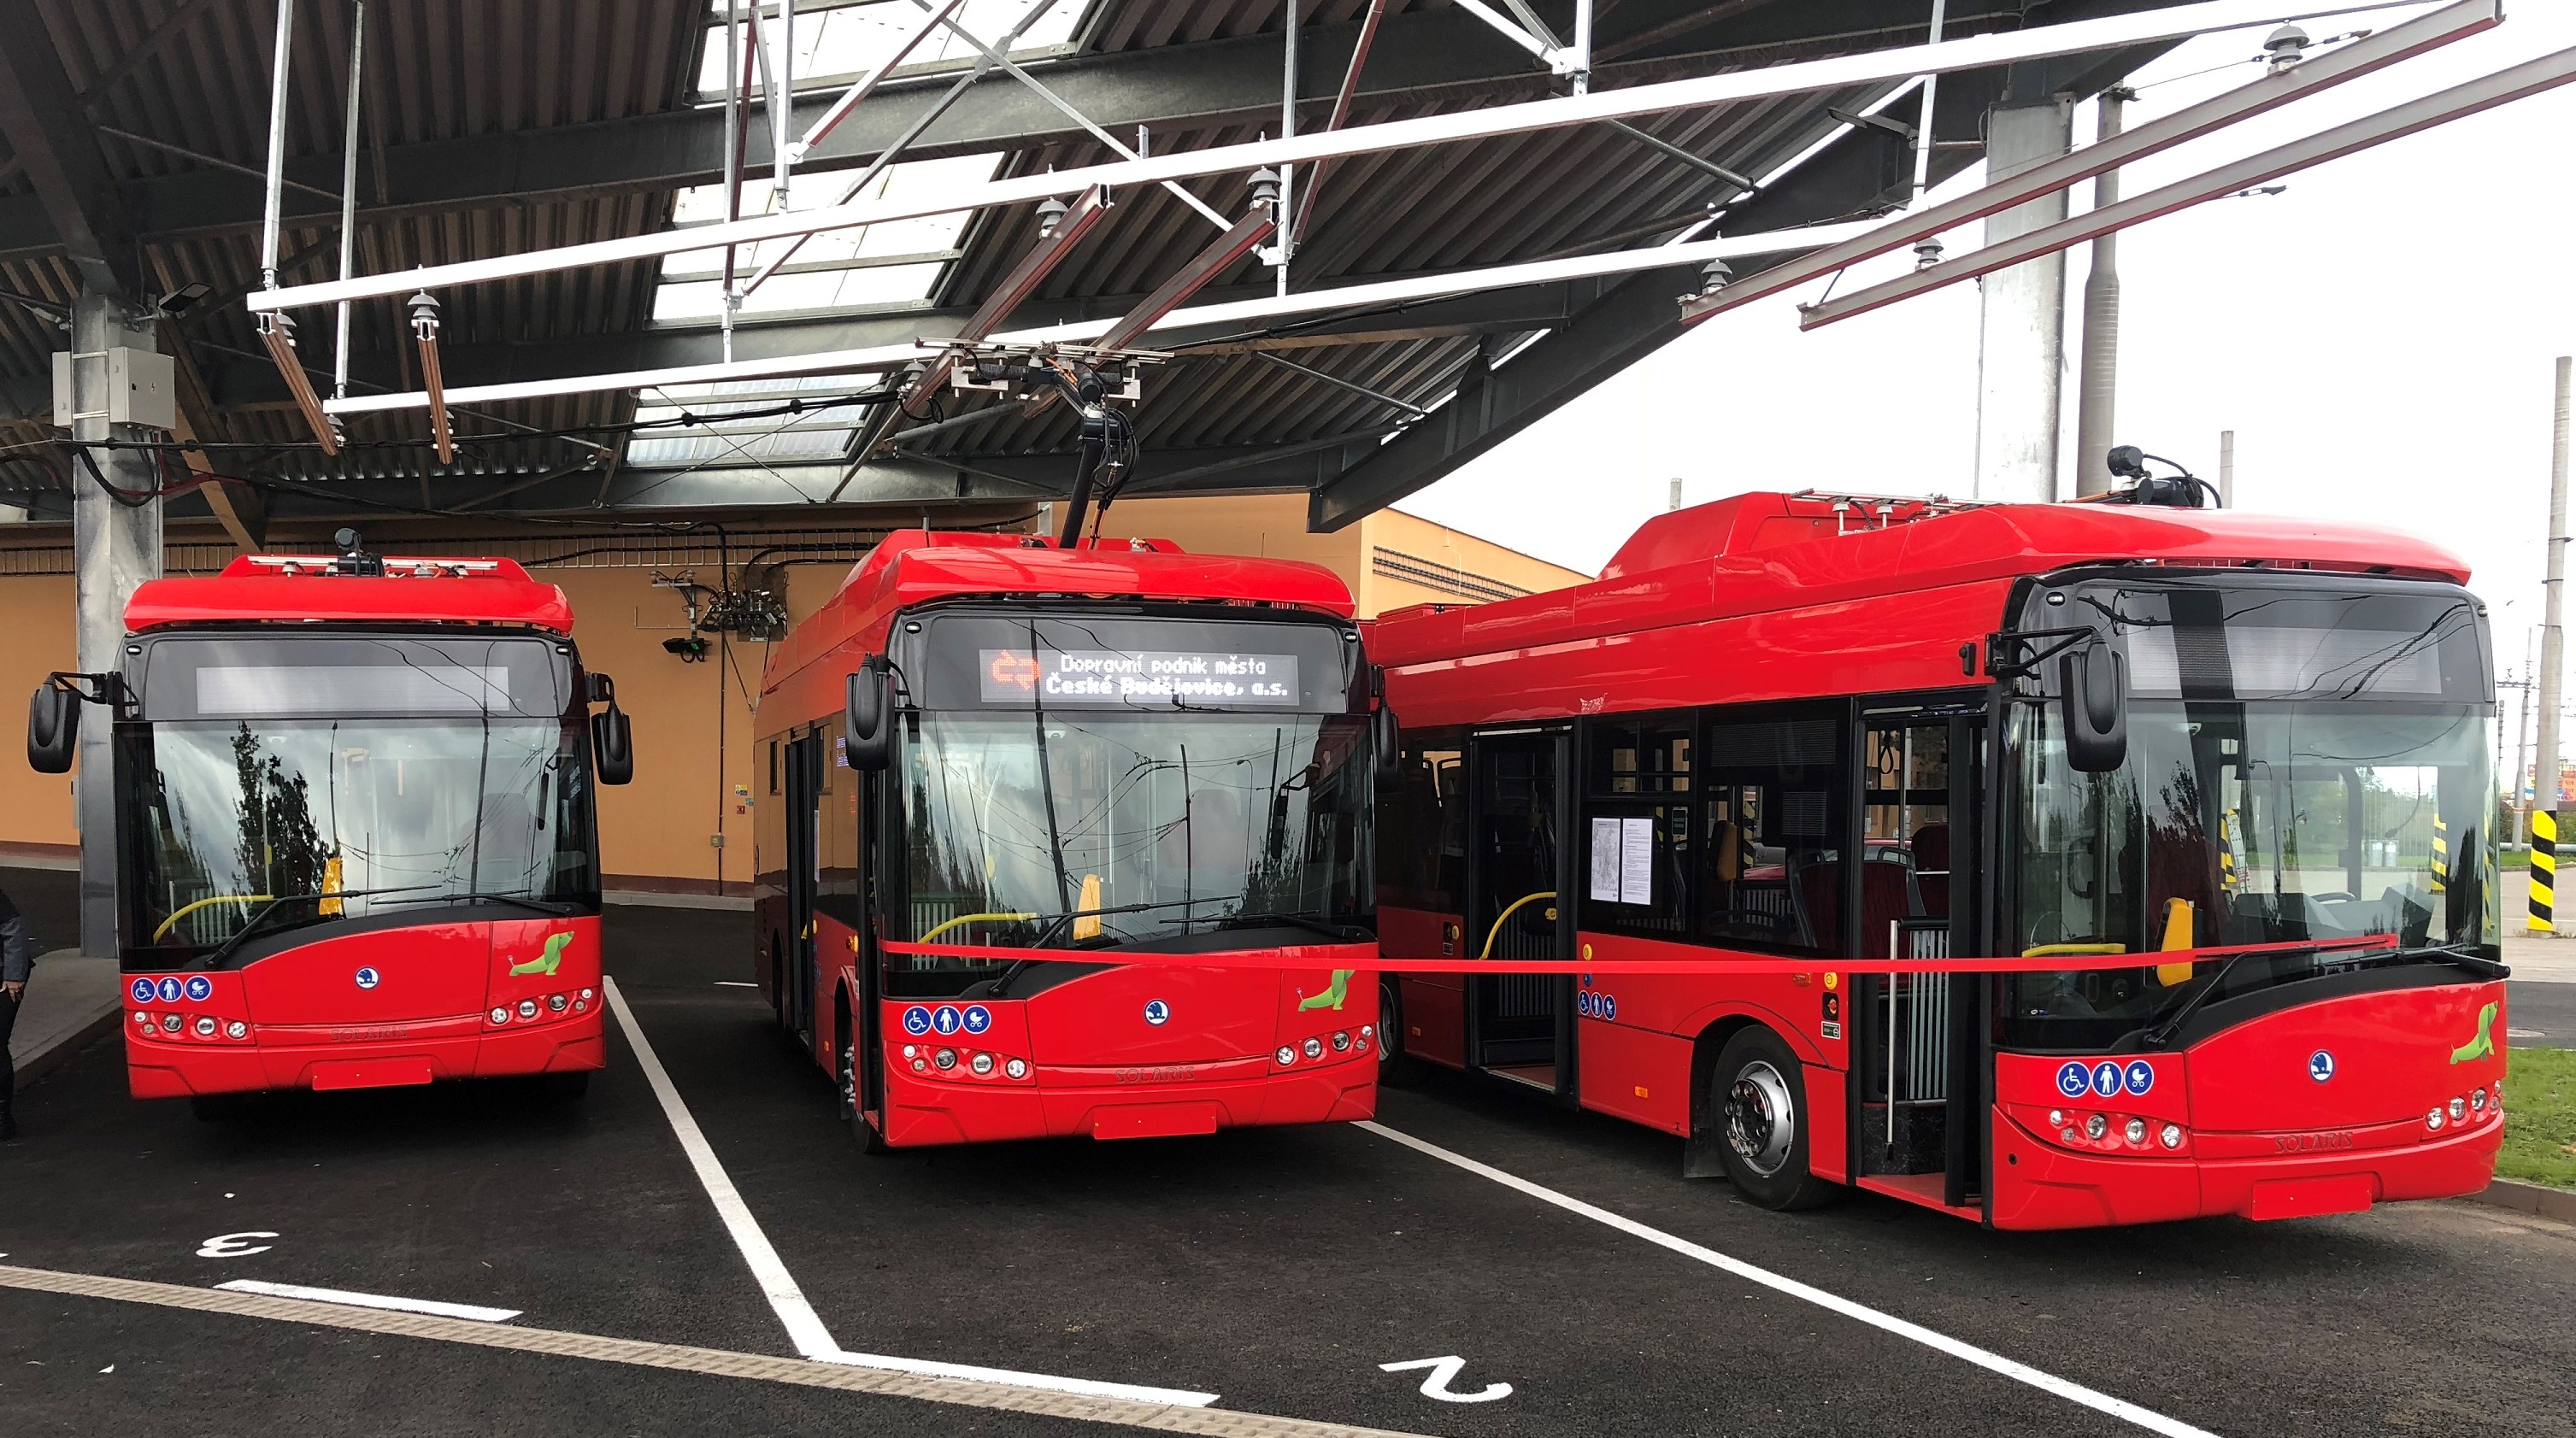 Českobudějovický dopravní podnik koupil pro obsluhu nových linek 21, 22 a 23 v centru města celkem jedenáct elektrobusů. Ve voze může jet až 45 cestujících, z toho 21 sedících